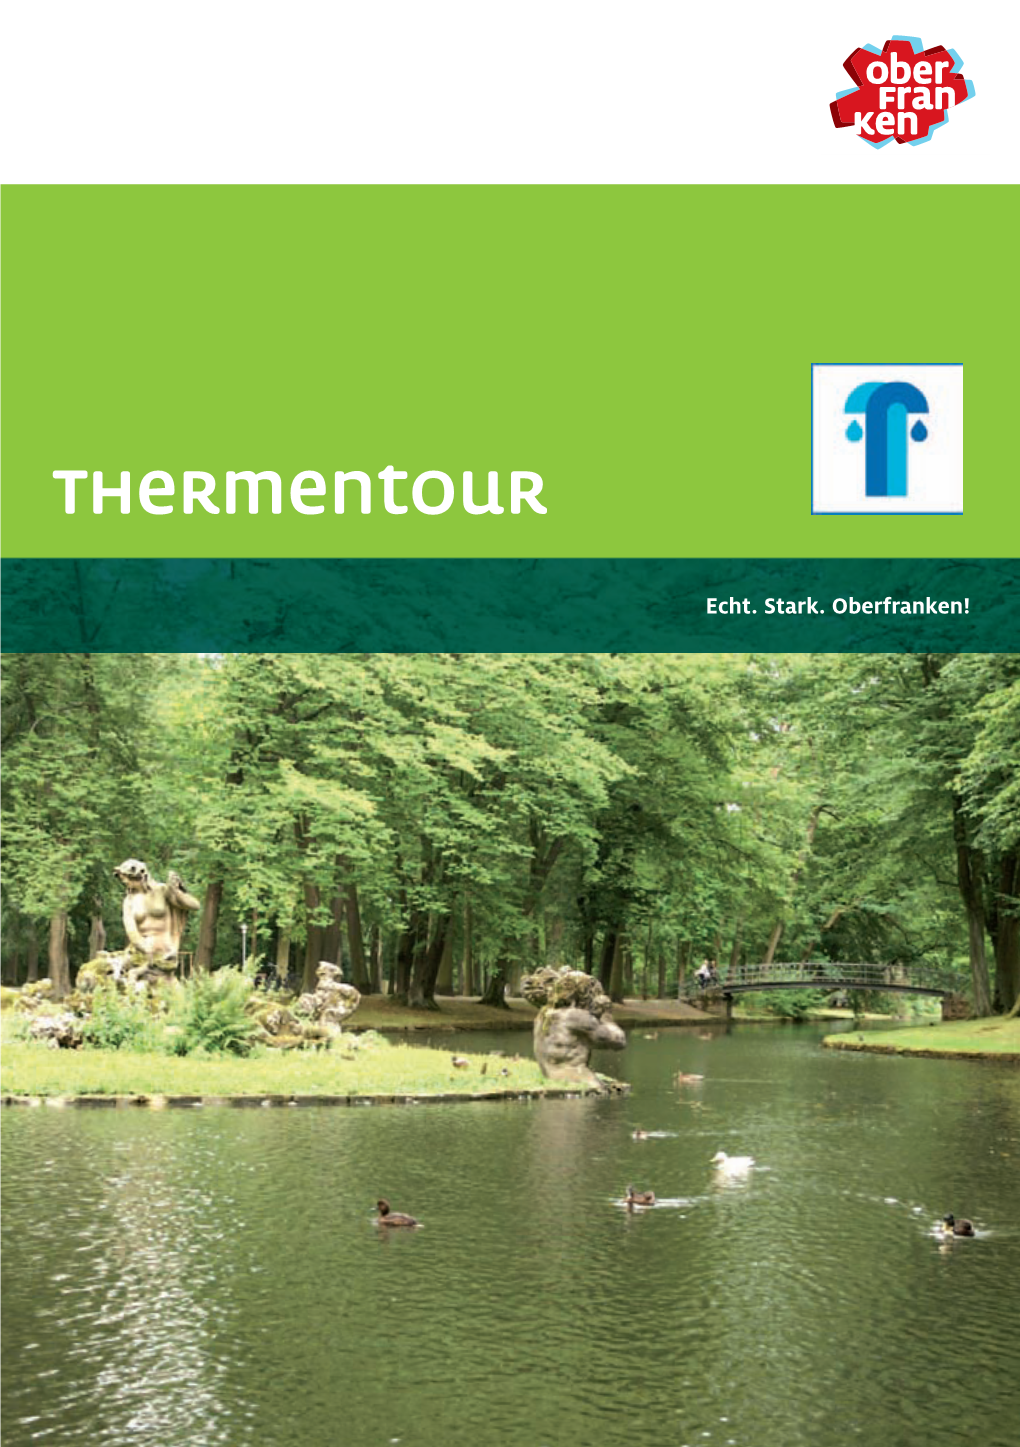 Thermentour Tel